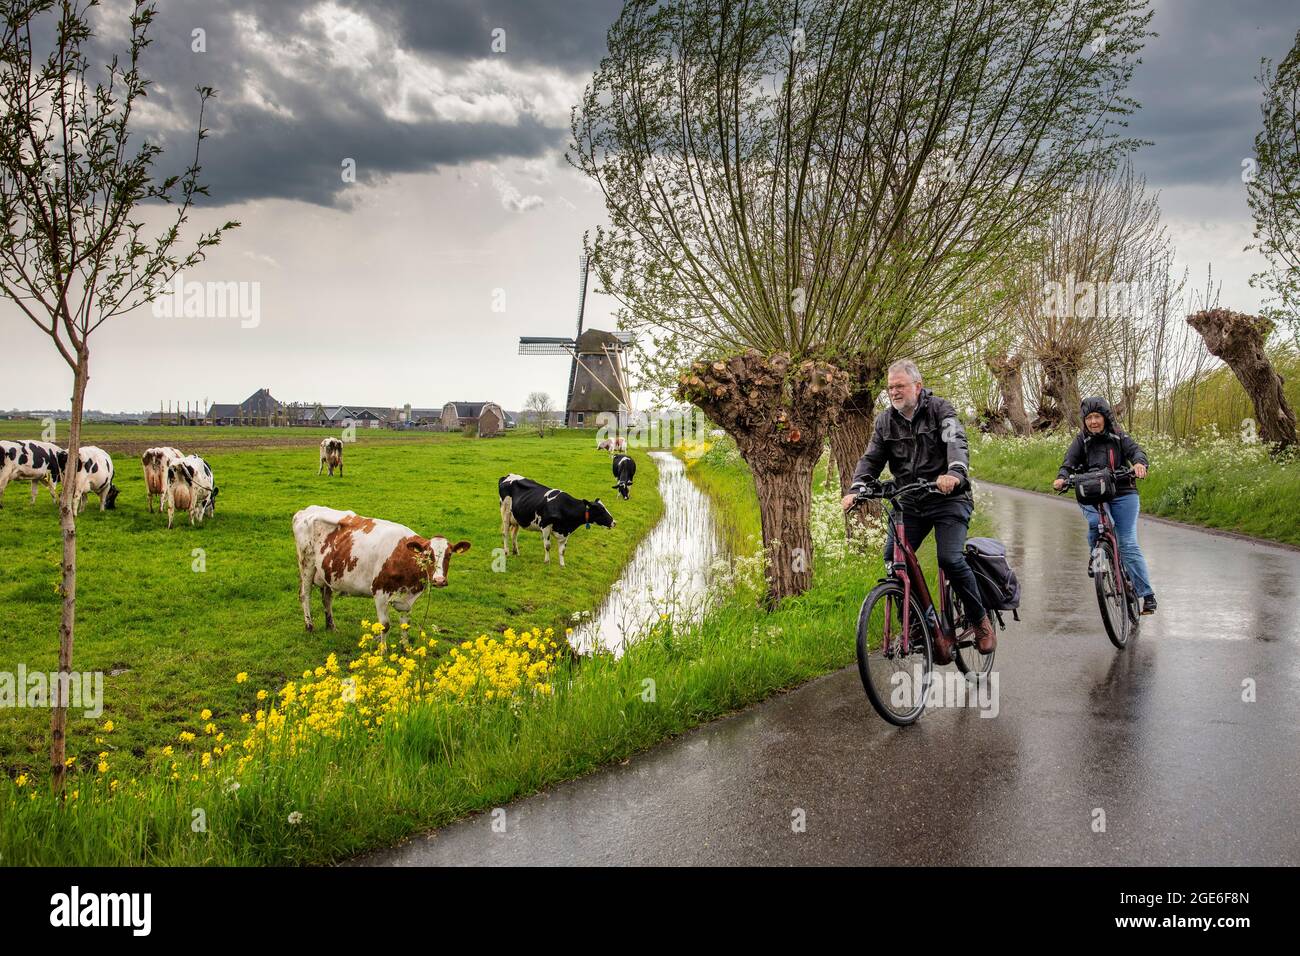 Paesi Bassi, Nigtevecht. Coppia anziana in bicicletta sotto la pioggia. Mucche. Mulino a vento. Foto Stock